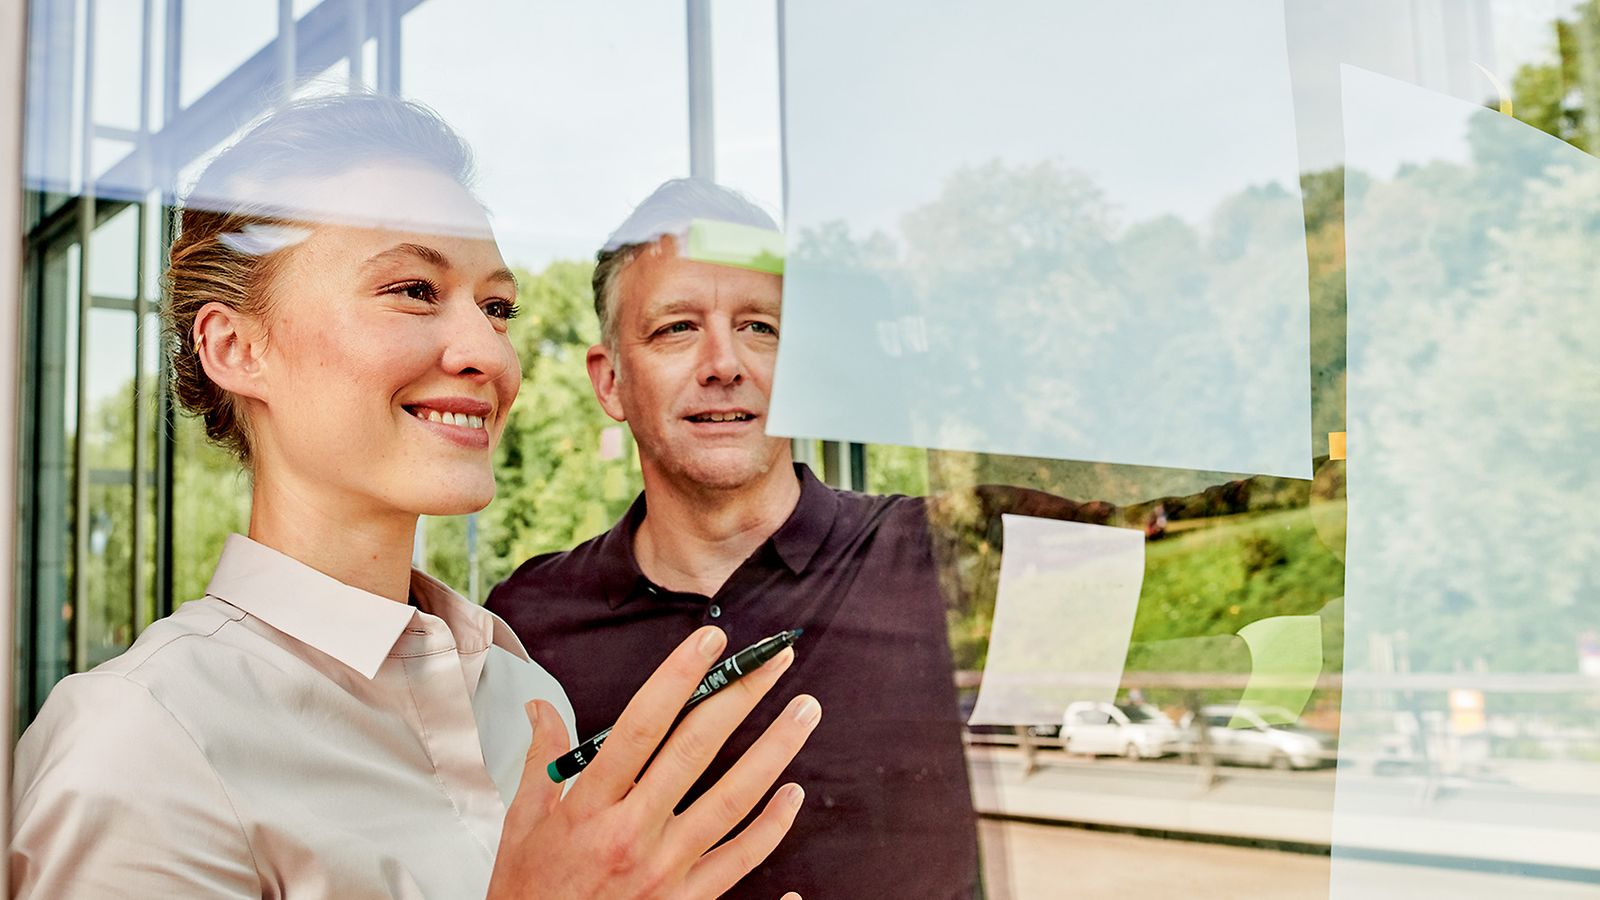 Eine Mann und eine Frau stehen vor einer Glaswand und zeigen freudig auf Pläne und Notizen an der Glaswand